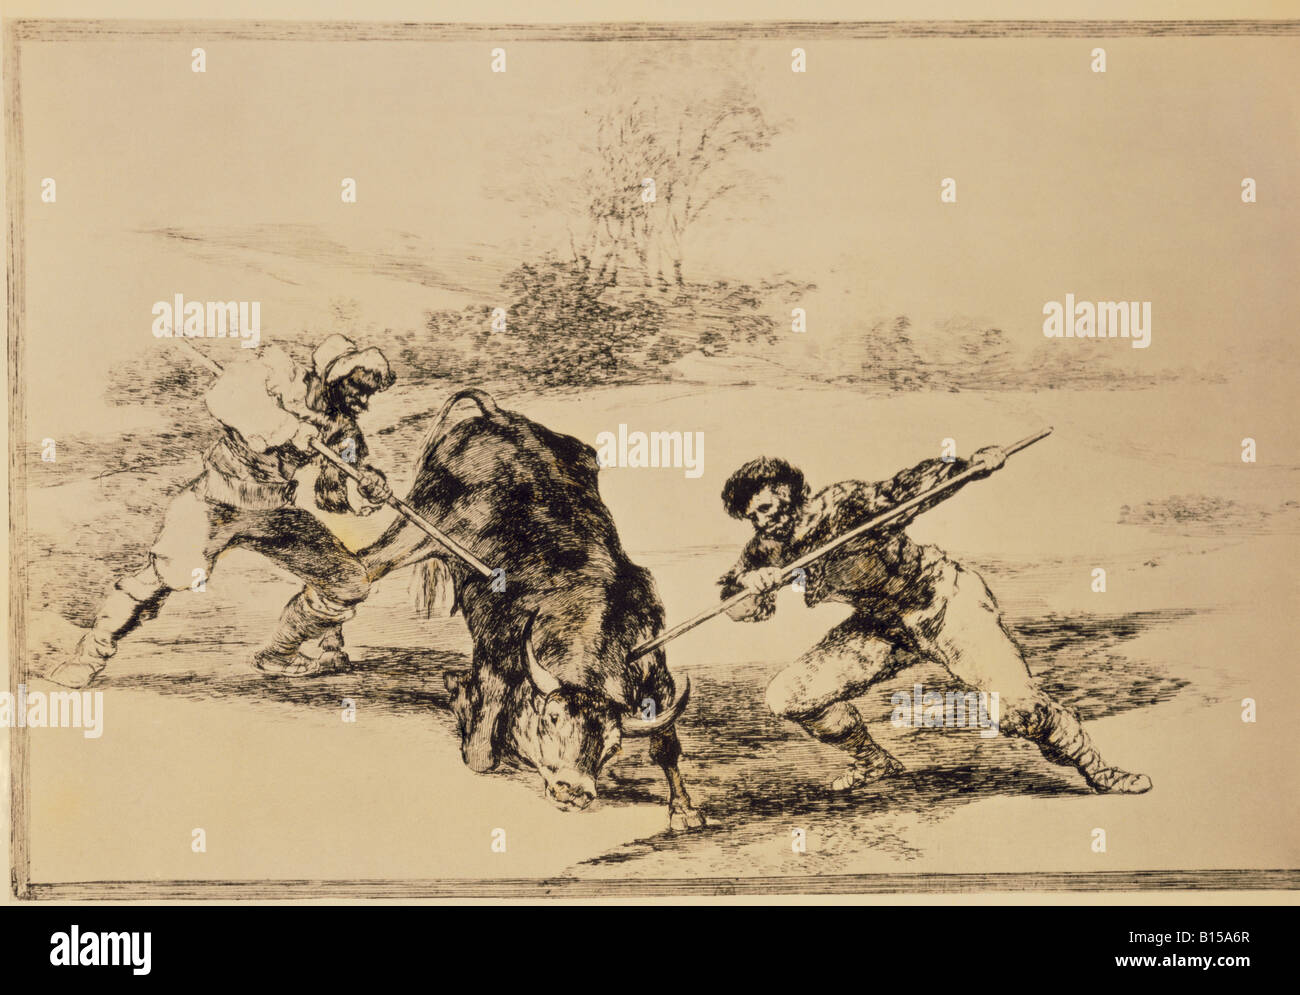 Beaux-arts, Goya y Lucientes, Francisco de (1746 - 1828), graphique, "Une autre façon de chasser à pied', de 'Tauromachia" (la corrida), 1816, collection privée, l'artiste n'a pas d'auteur pour être effacé Banque D'Images